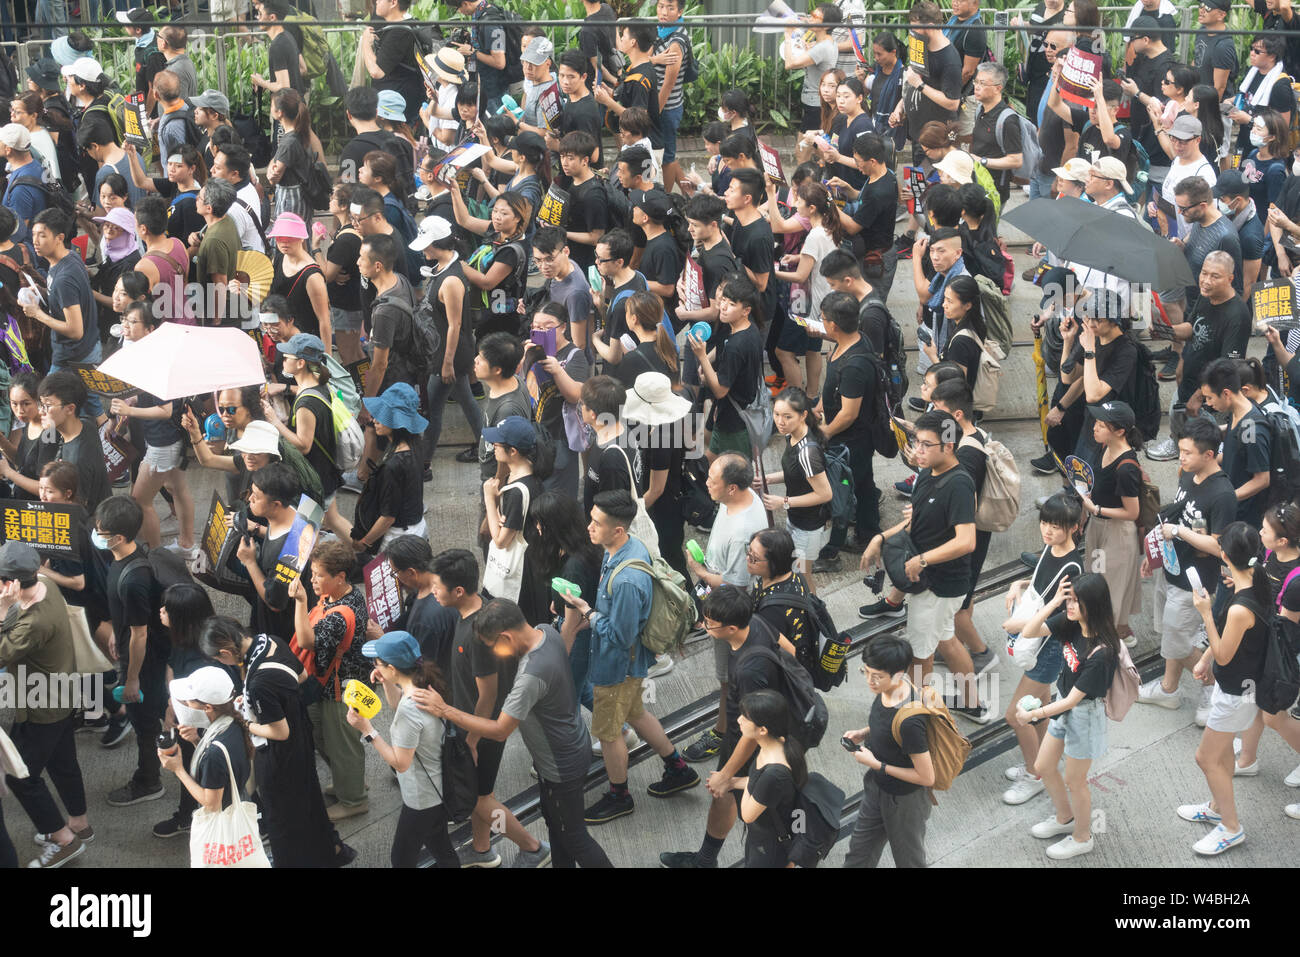 Les gens protestent dans la rue à hong kong. Plus de 100 000 manifestants sont descendus dans les rues de Hong Kong pour s'opposer à un projet de loi sur l'extradition controversée. Banque D'Images